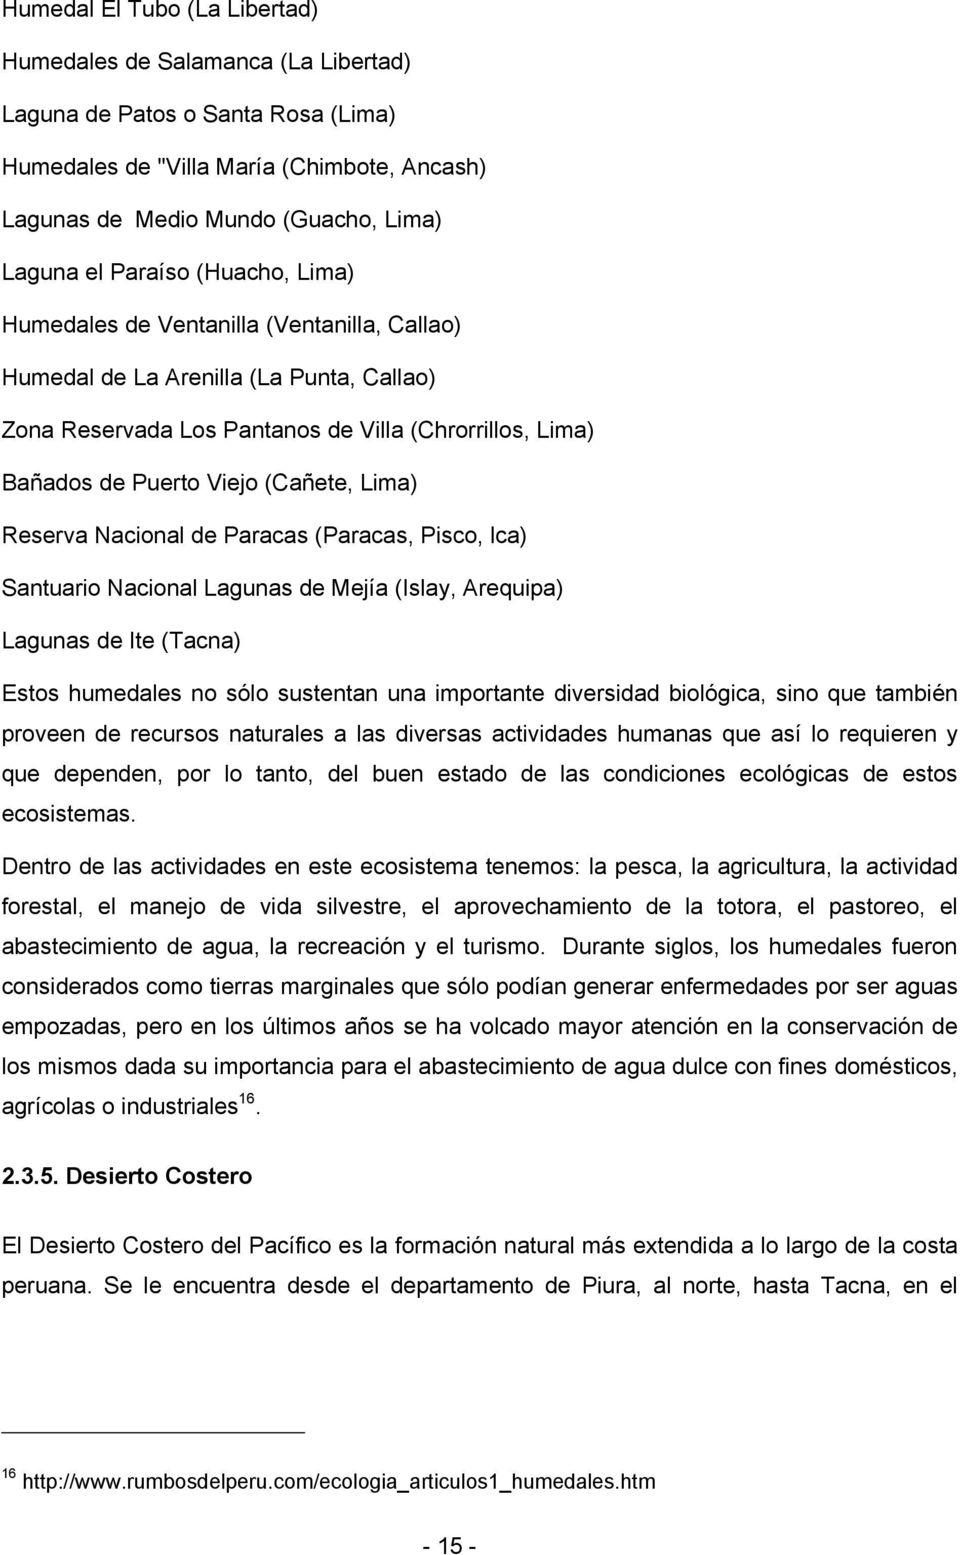 Lima) Reserva Nacional de Paracas (Paracas, Pisco, lca) Santuario Nacional Lagunas de Mejía (Islay, Arequipa) Lagunas de Ite (Tacna) Estos humedales no sólo sustentan una importante diversidad